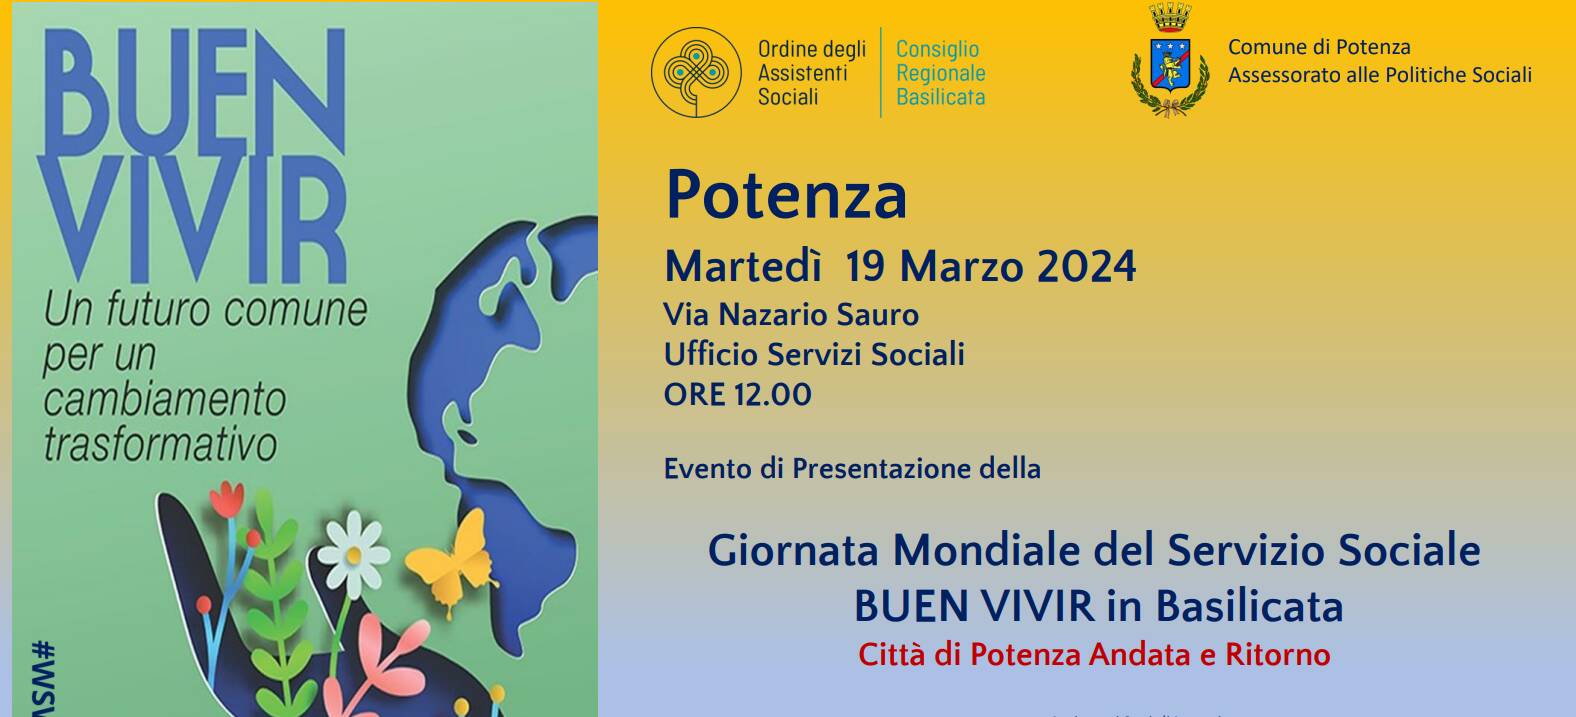 Giornata Mondiale del Servizio Sociale Buen Vivir in Basilicata